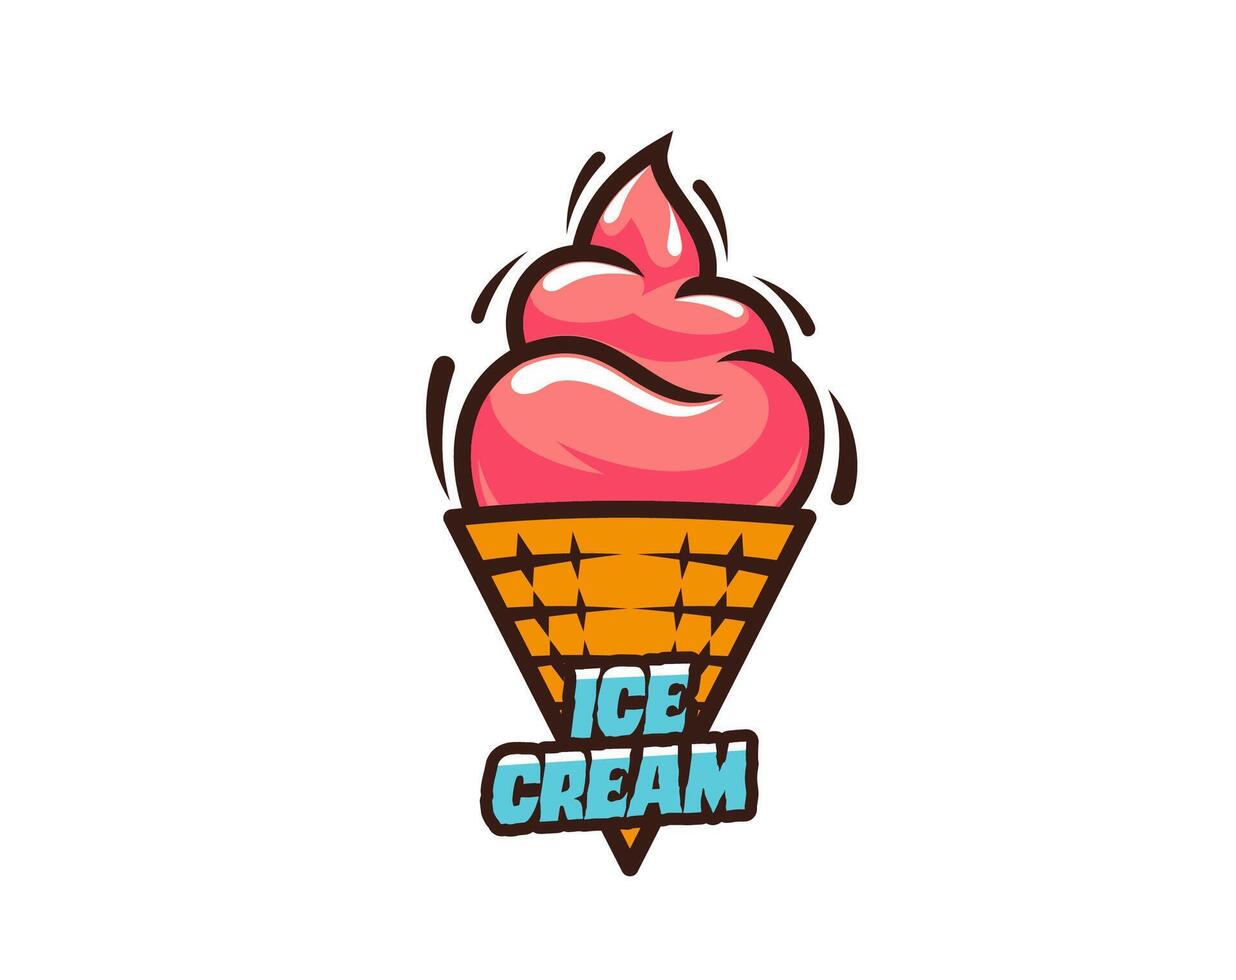 hielo crema en gofre cono icono de helado postre vector